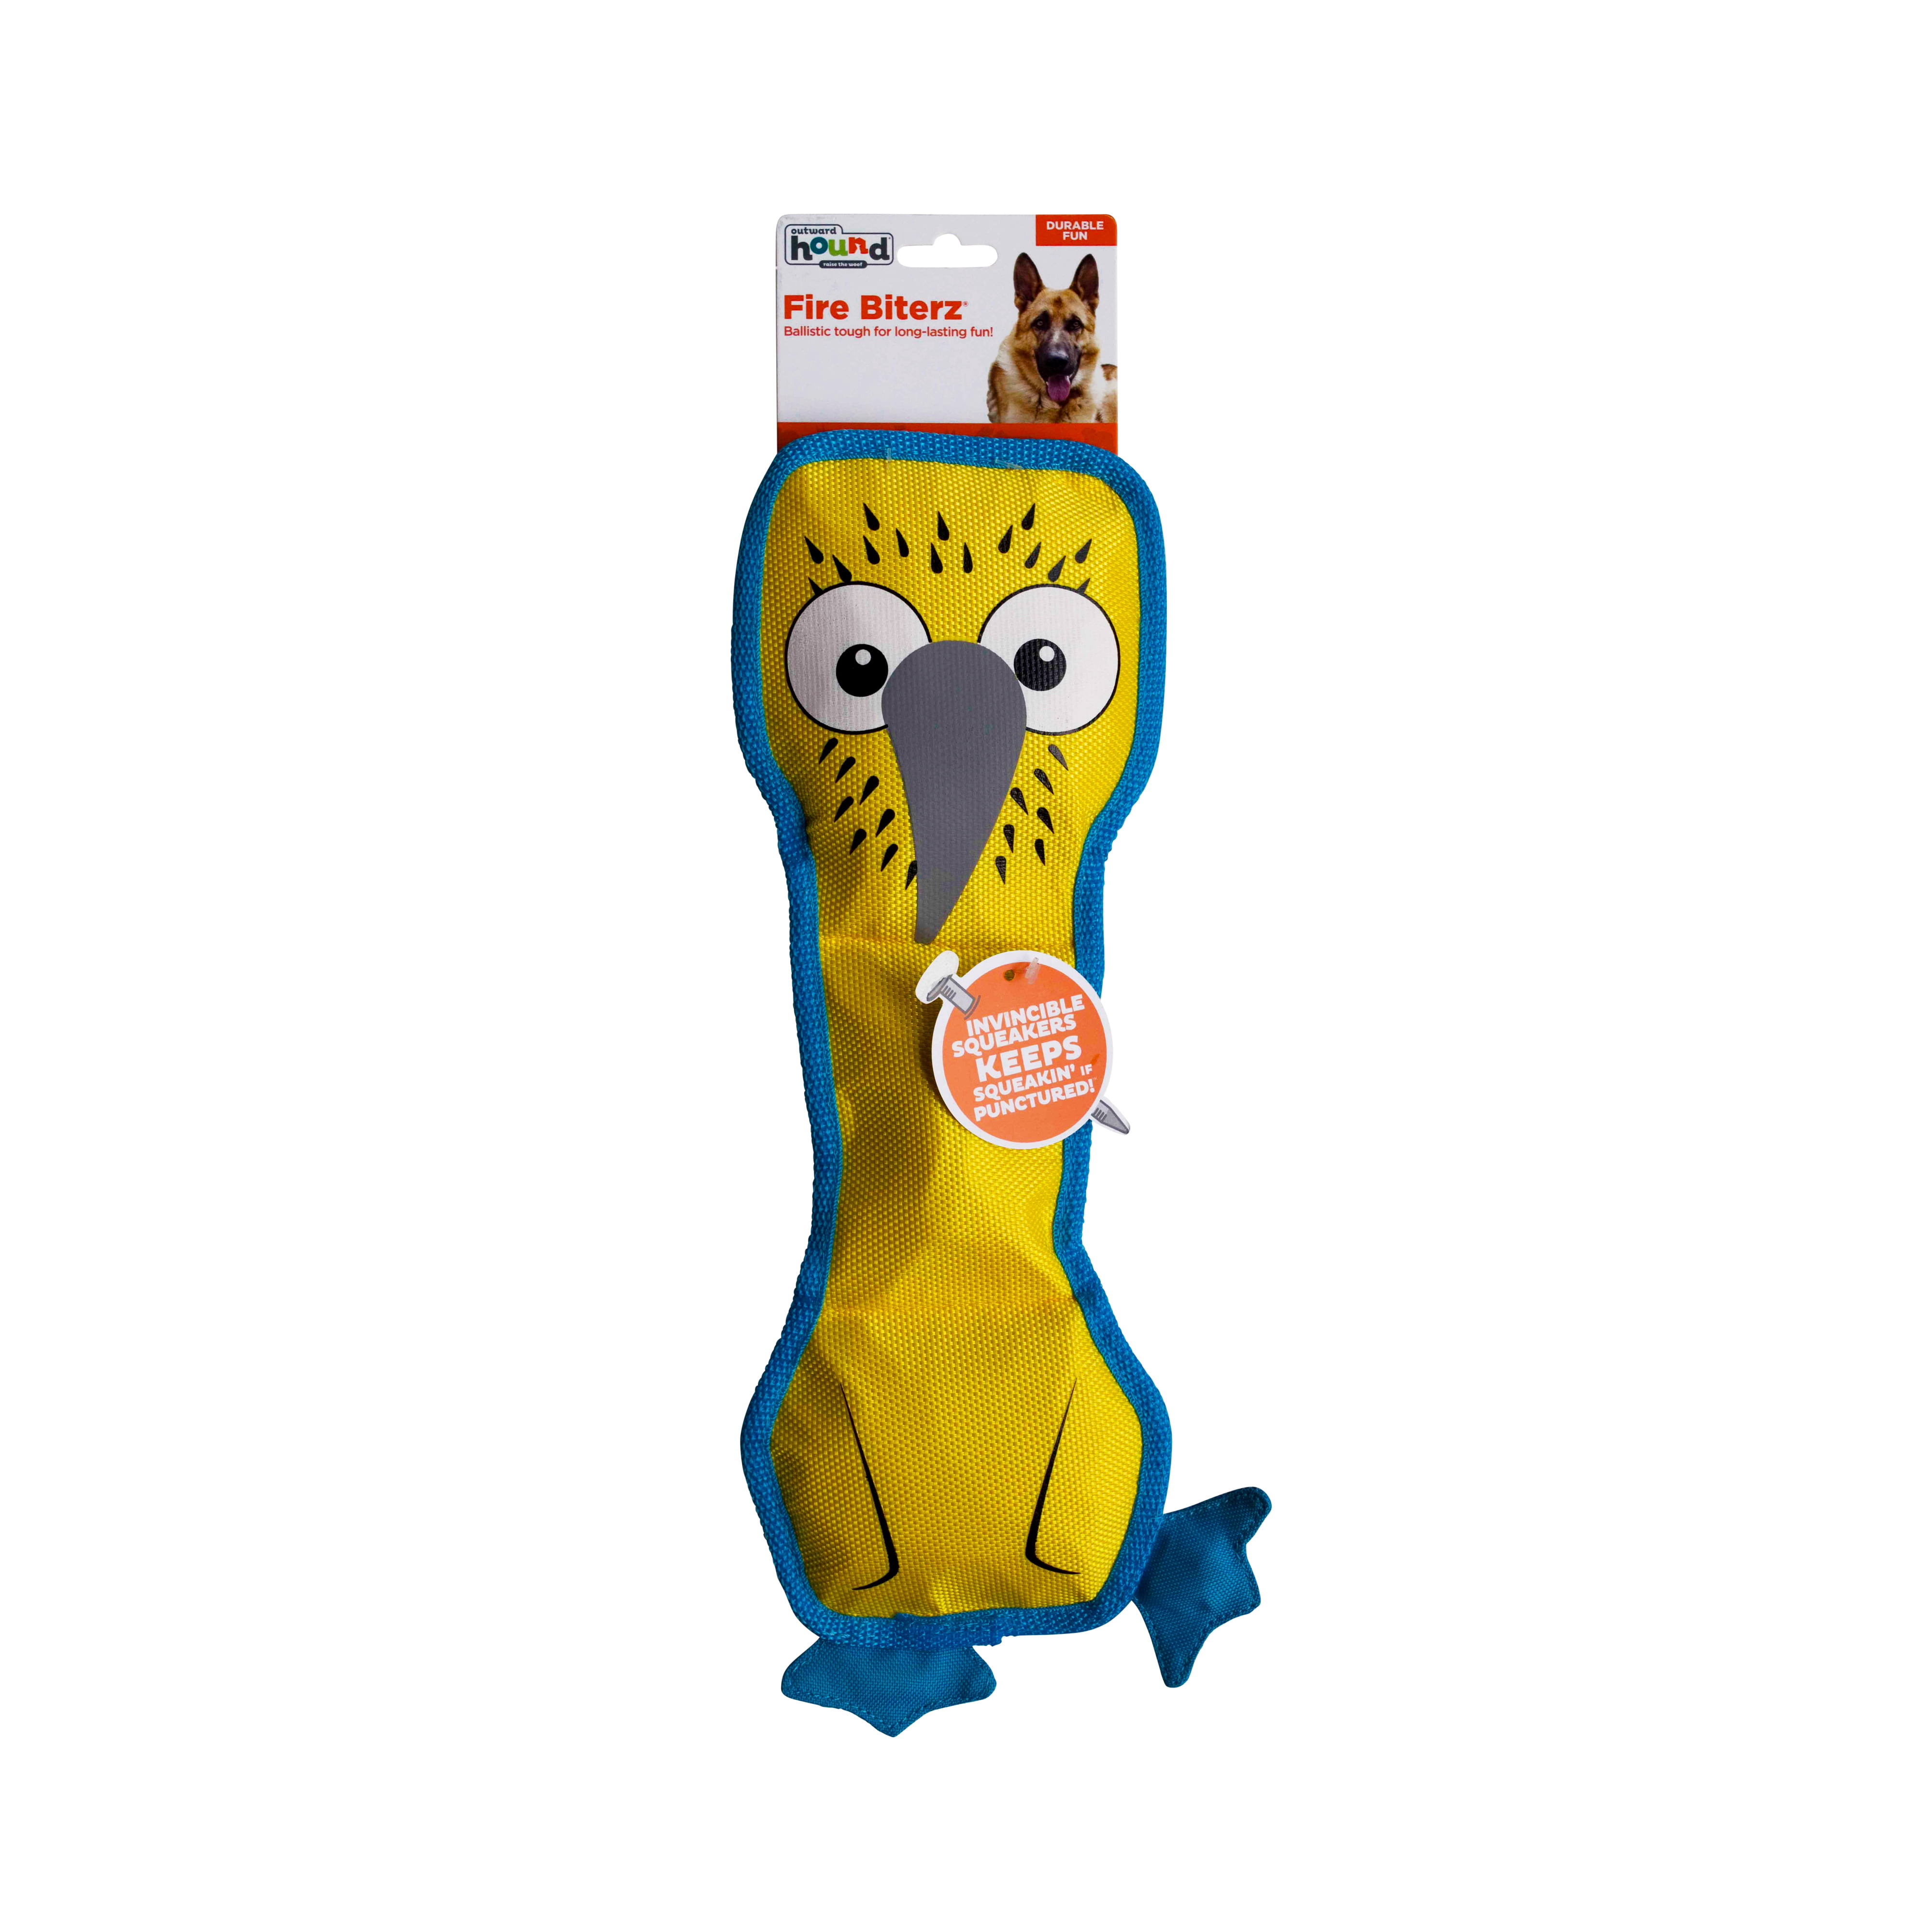 Outward Hound Fire Biterz Lizard Dog Toy - Durham, NC - Barnes Supply Co